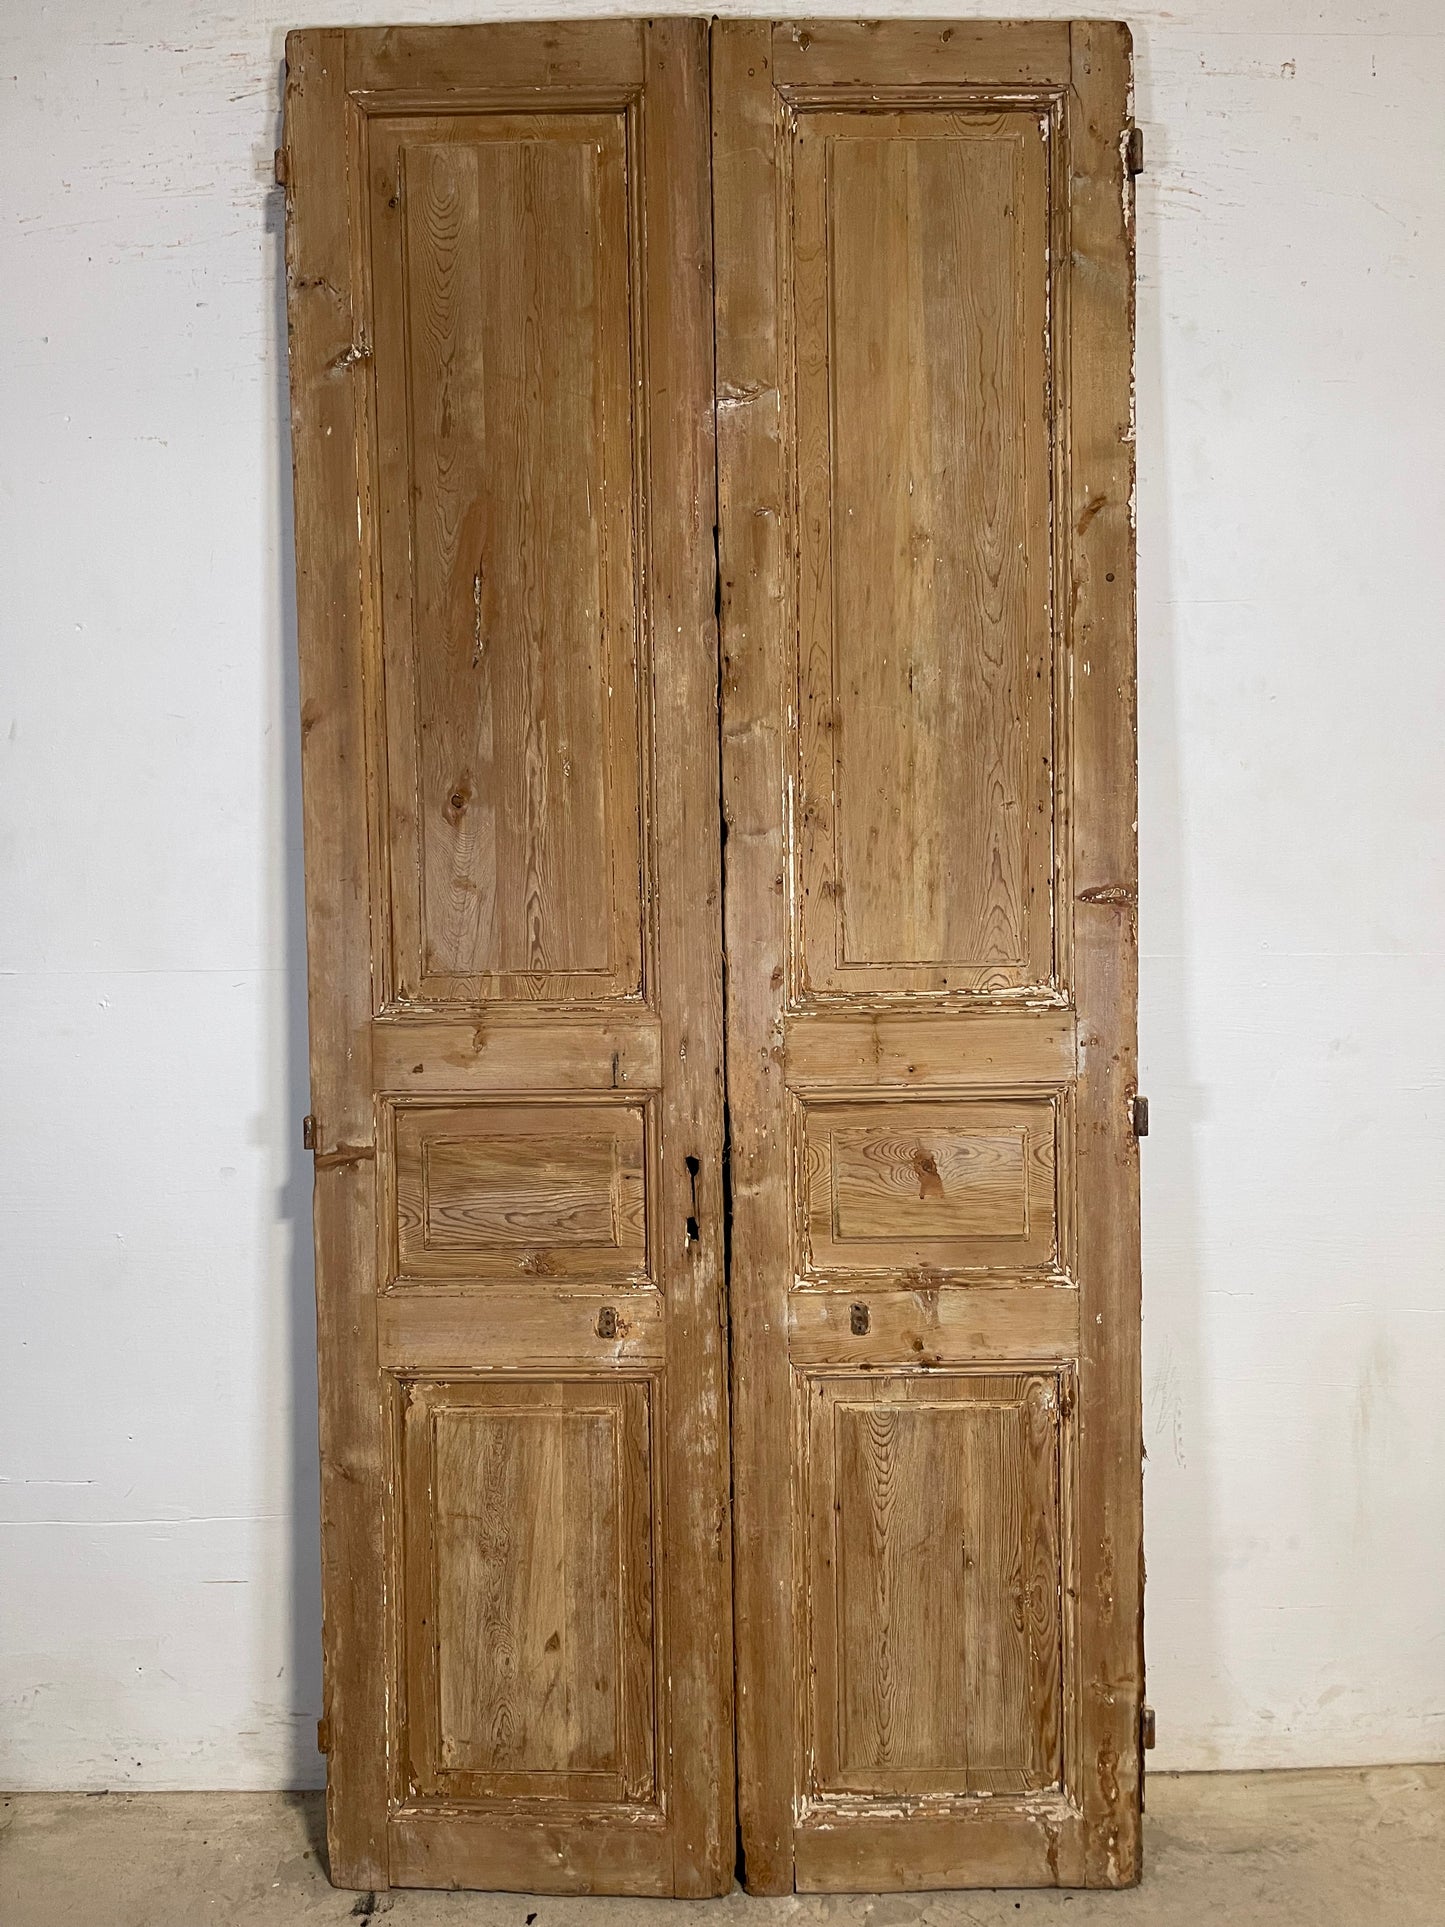 Antique French panel Doors (95.75x44.75) K705